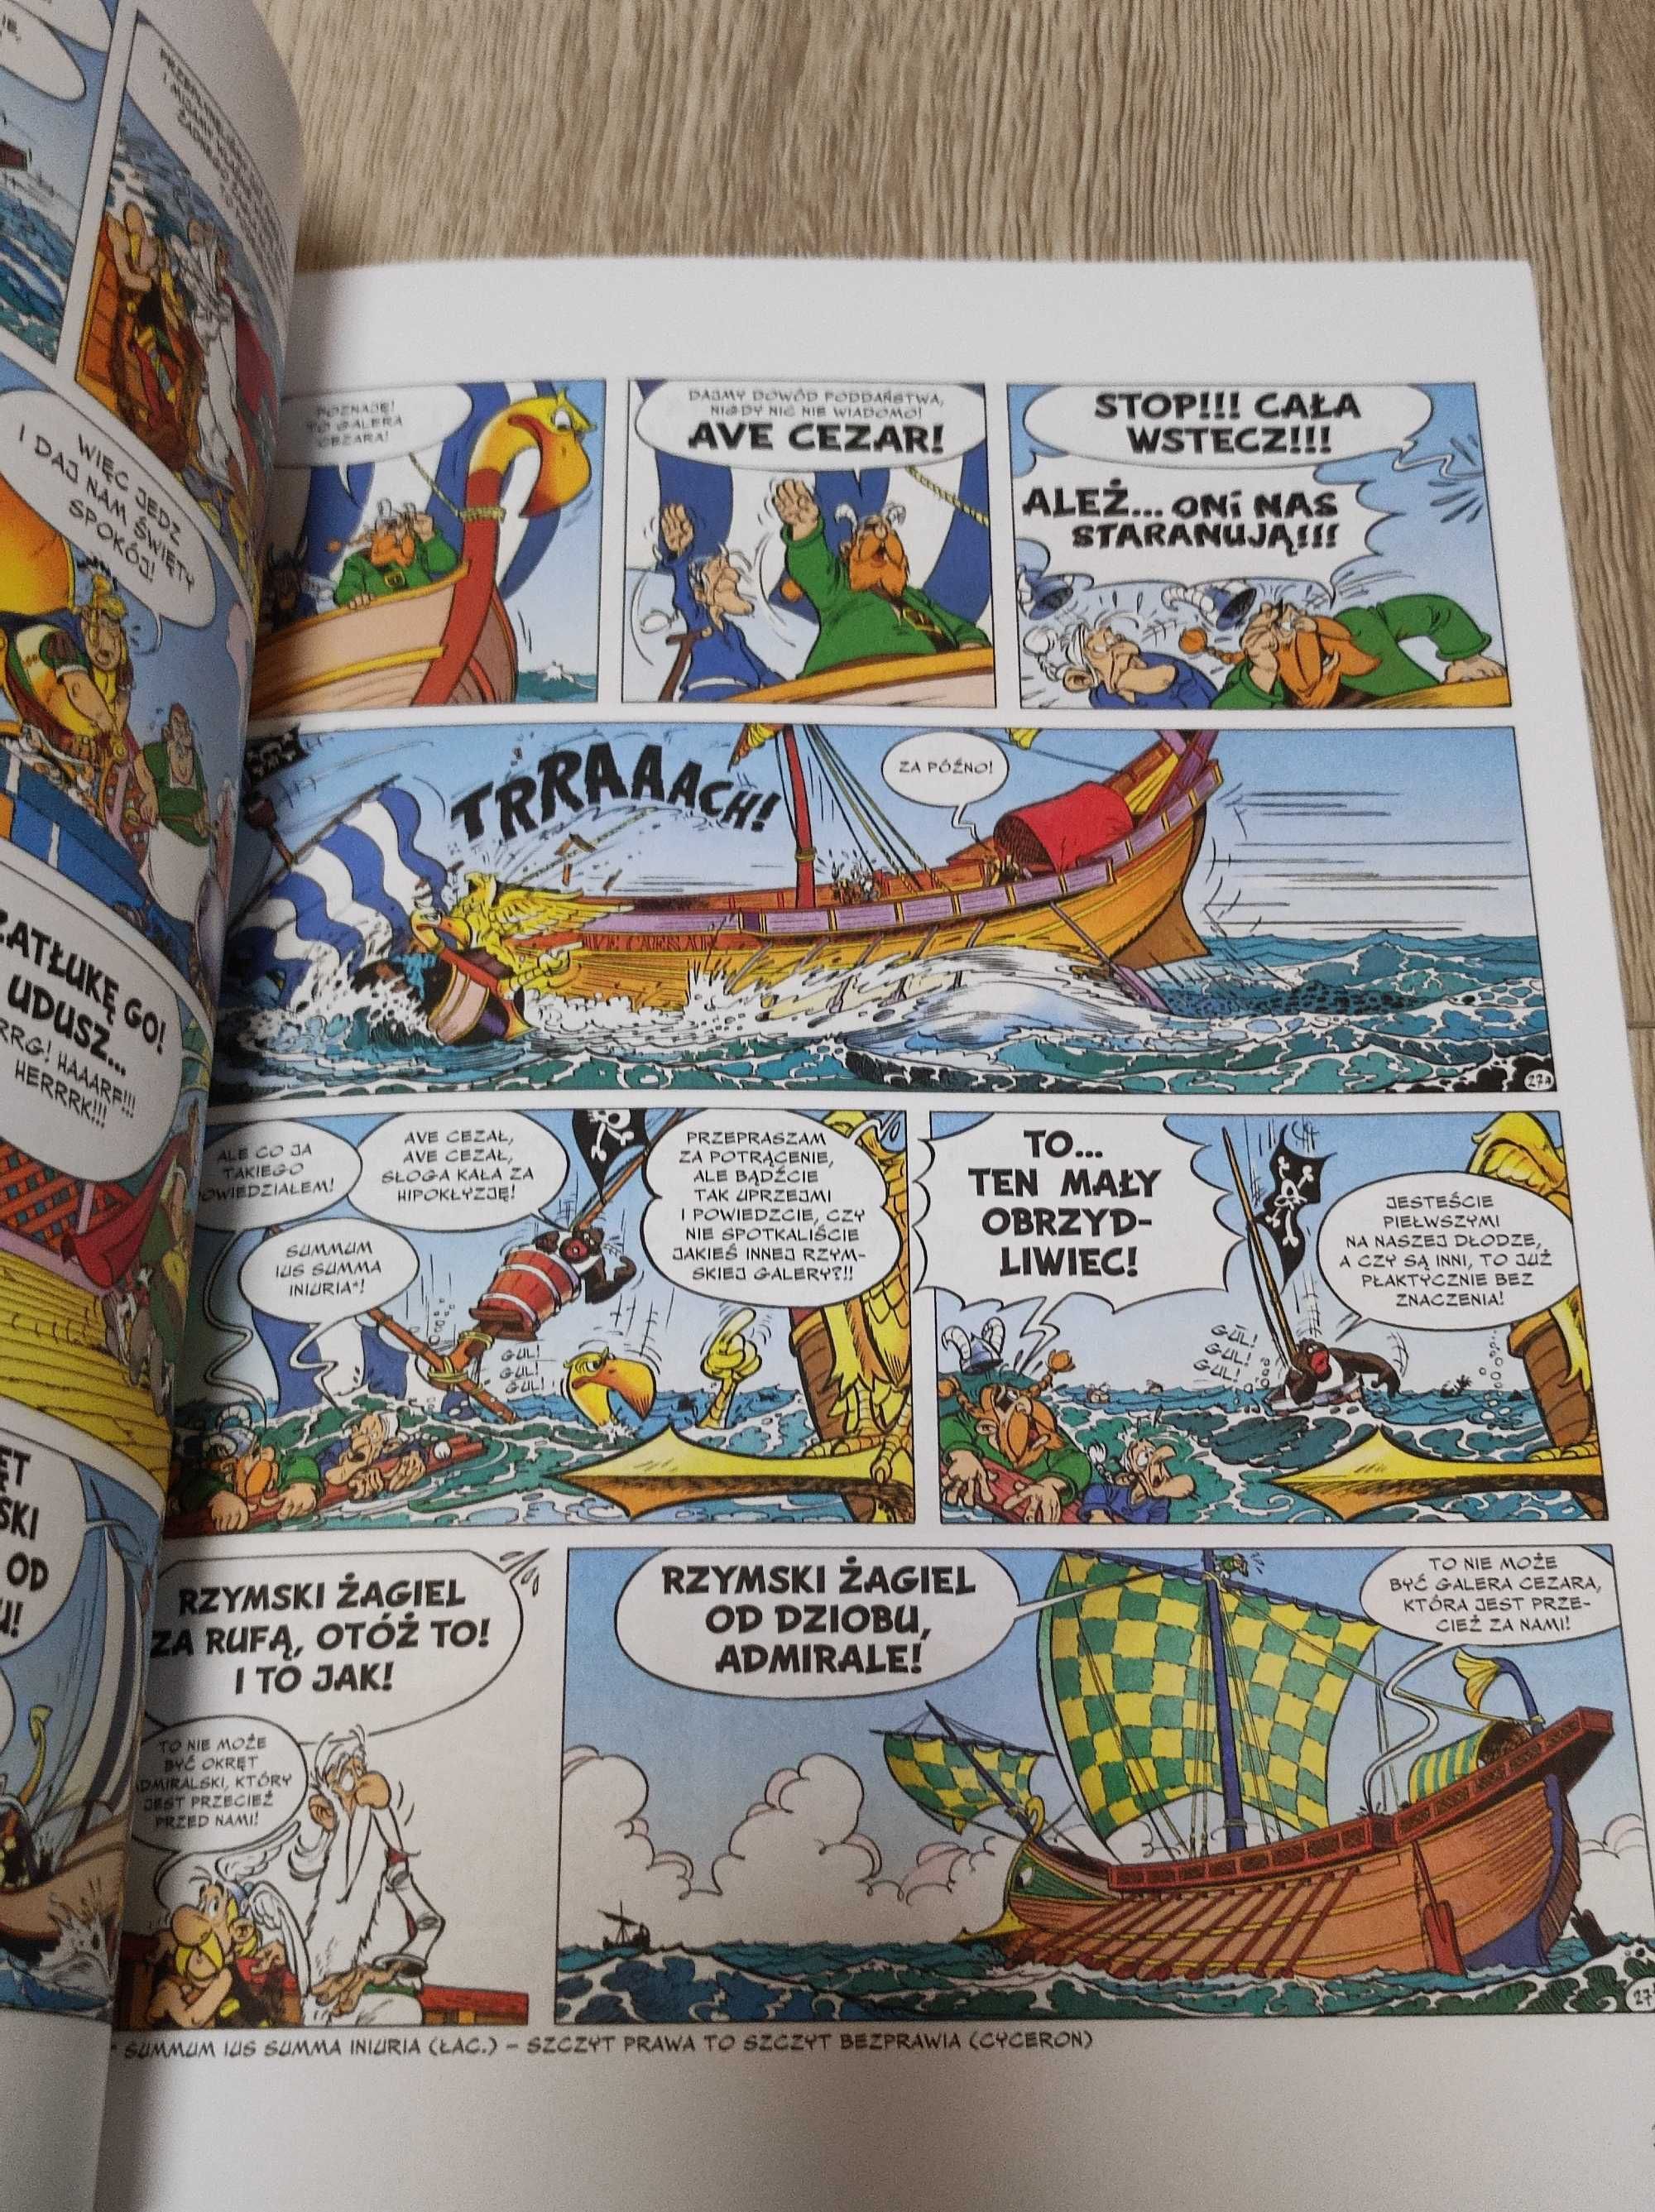 Komiks Asterix - Galera Obeliksa